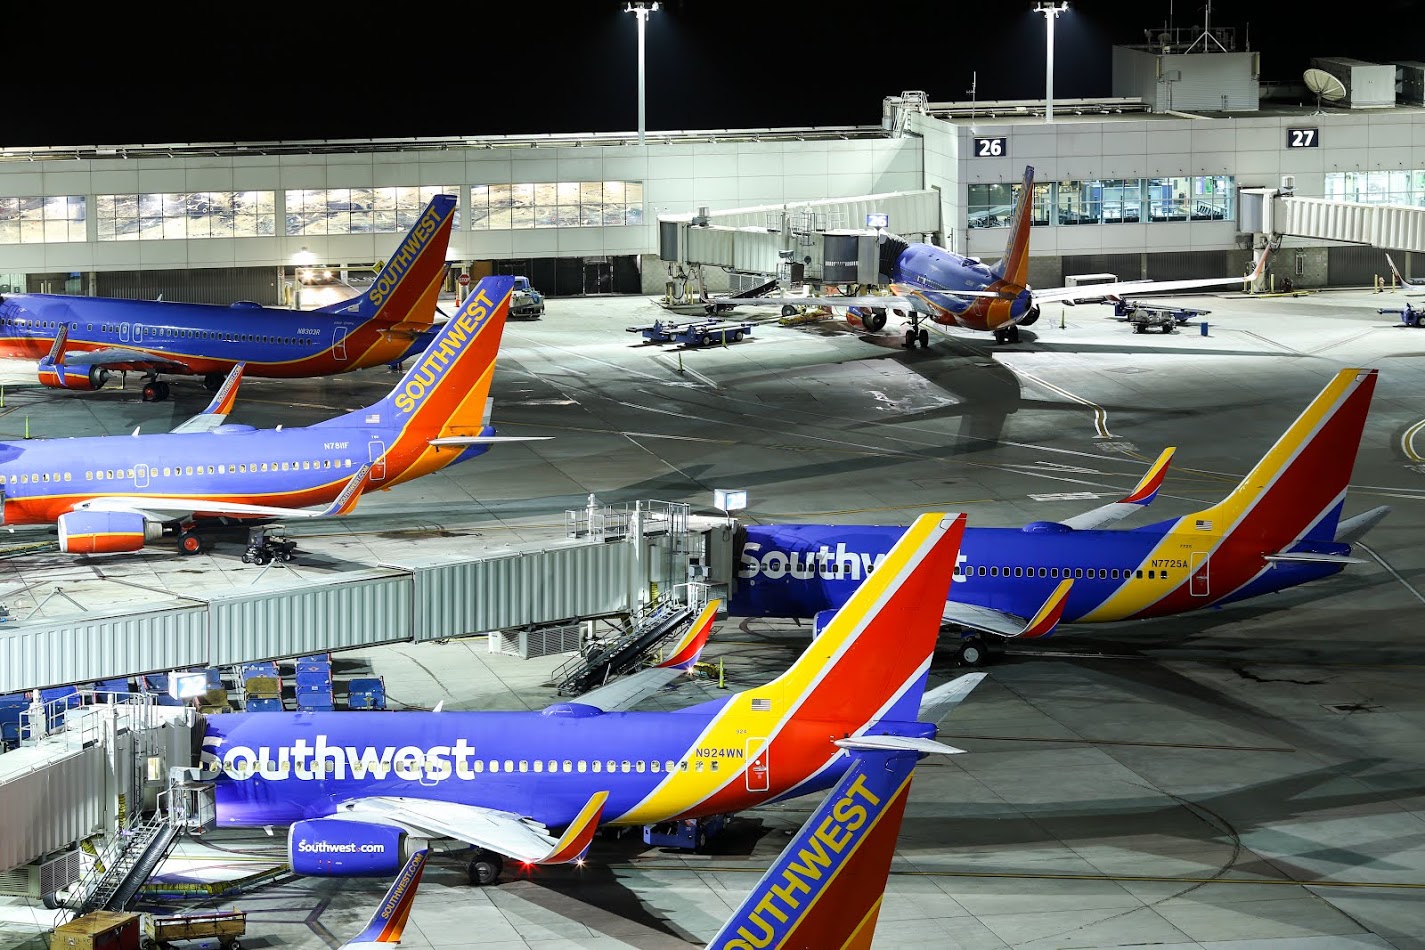 Southwest Airlines announces four new nonstop destinations at OAK | Port of Oakland